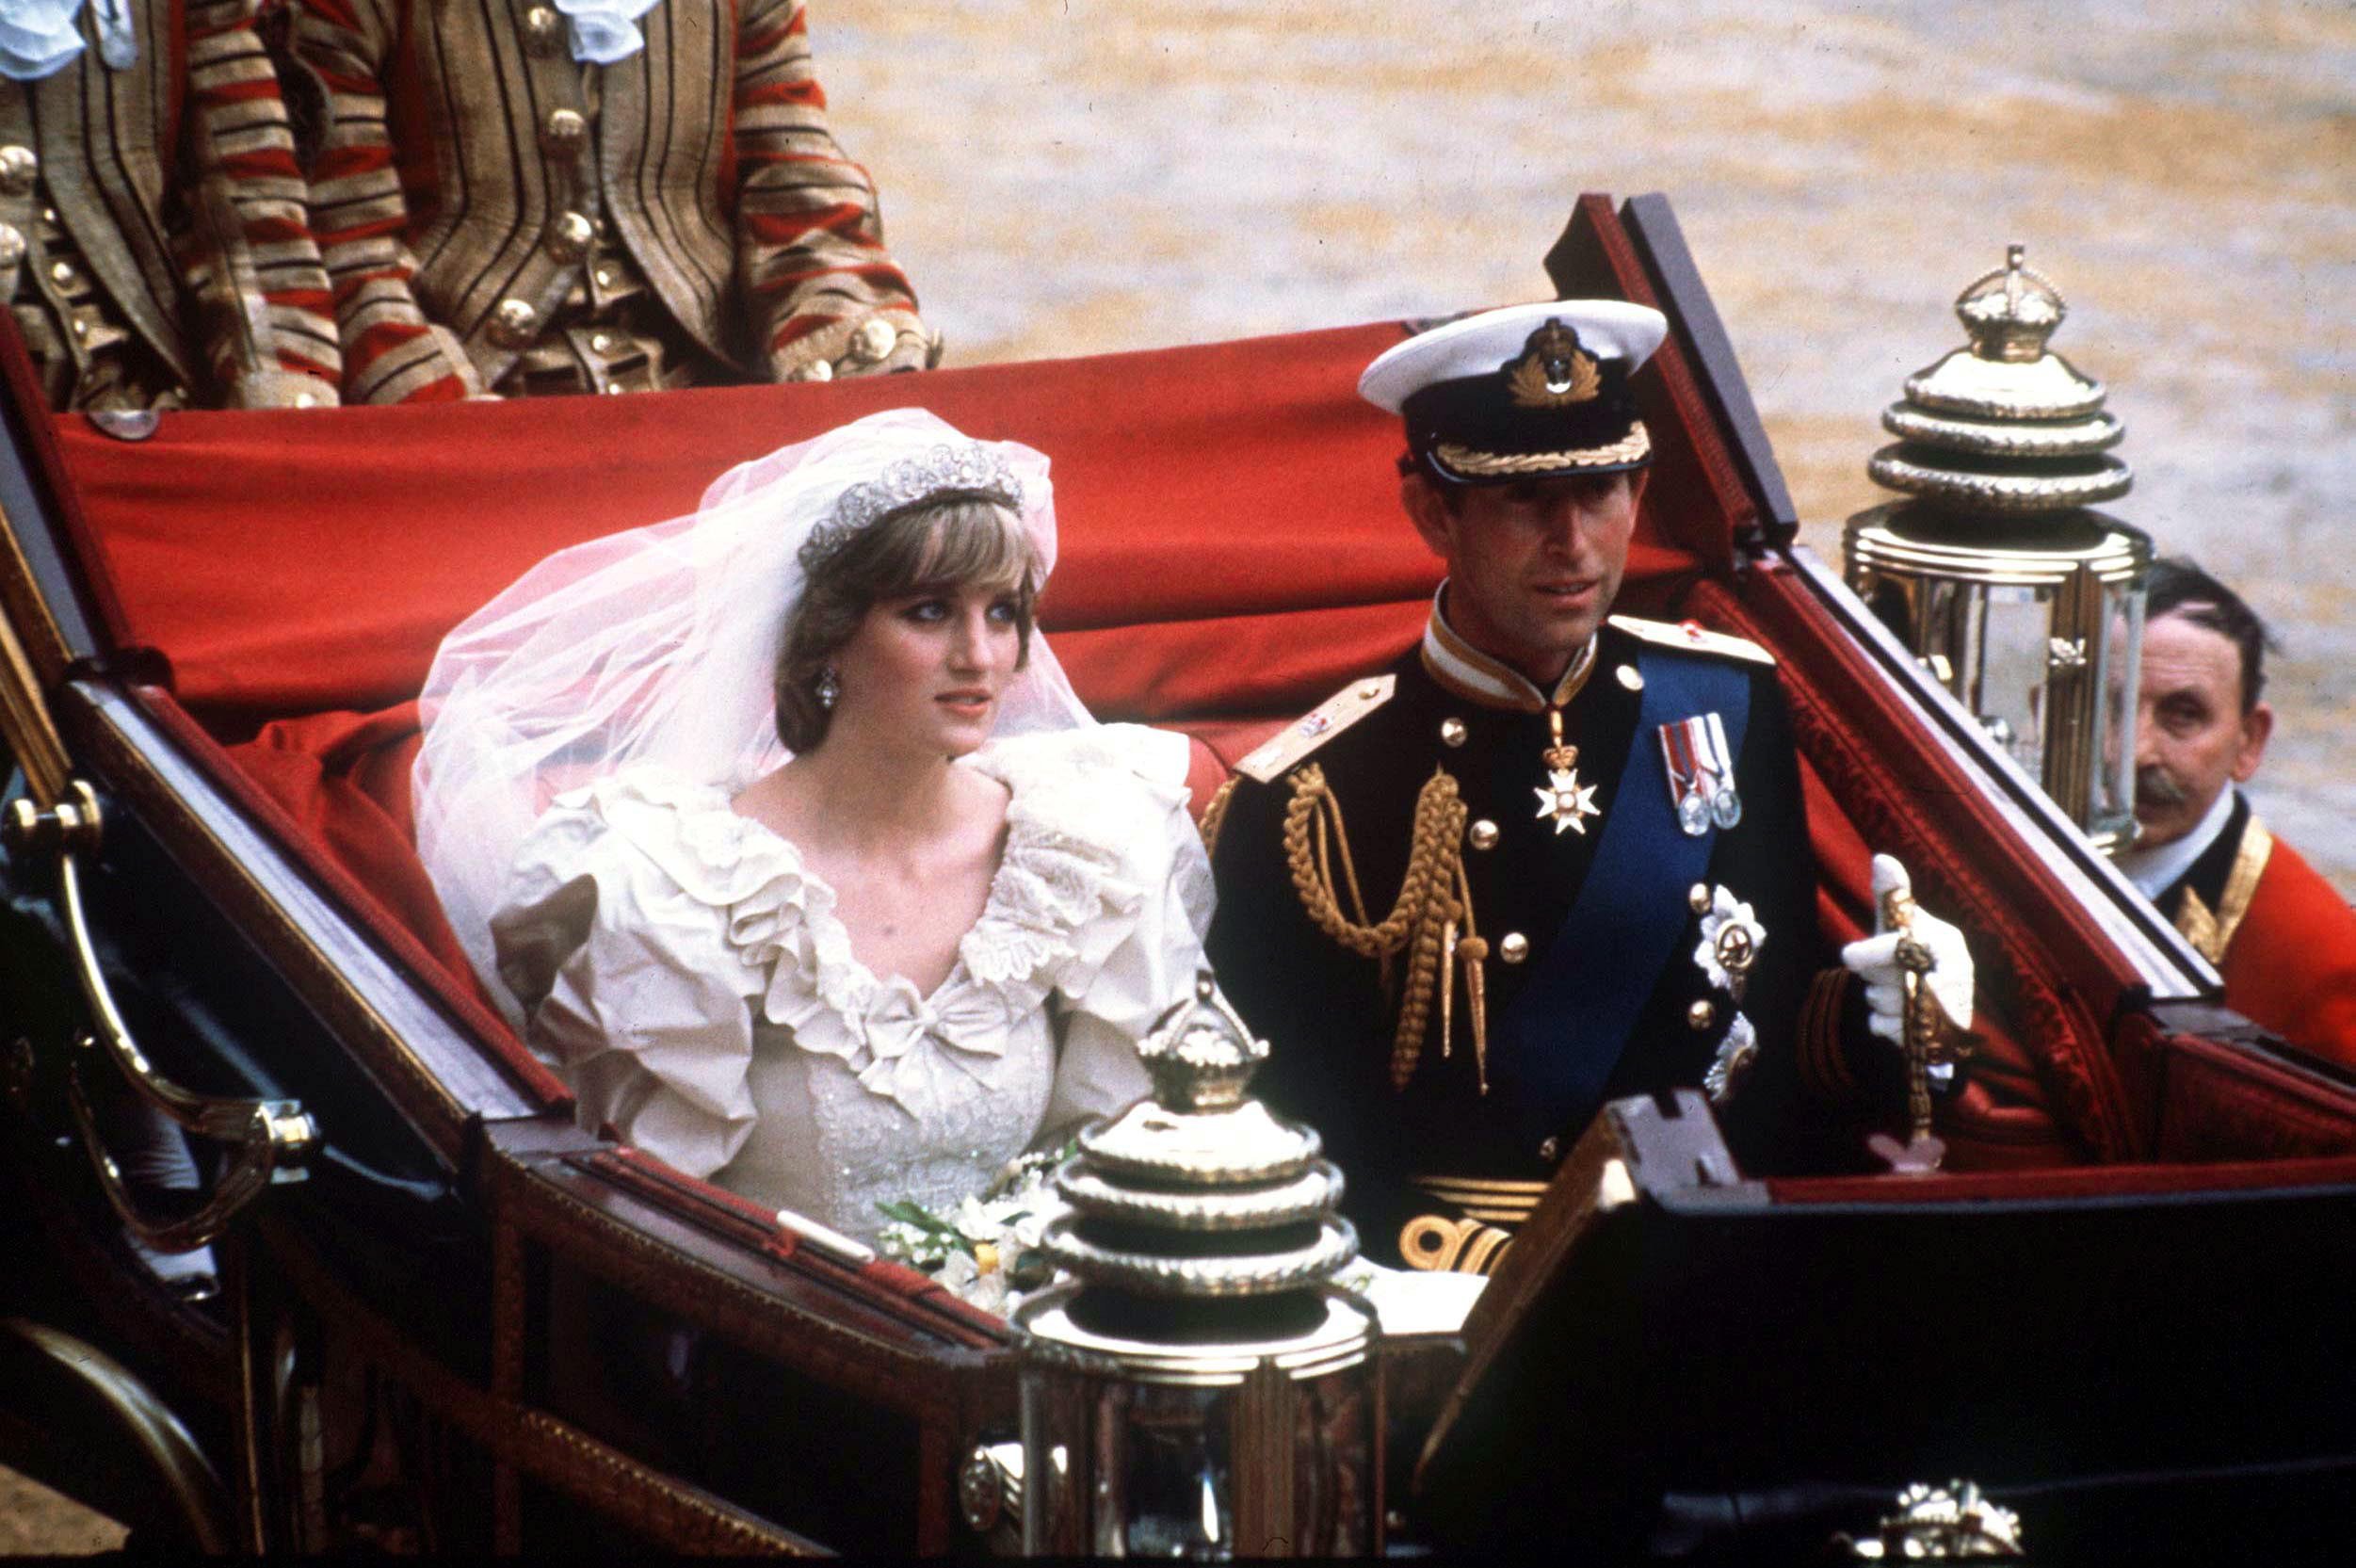  Le prince Charles et la princesse Diana dans un carrosse ouvert lors de leur retour à Buckingham Palace après leur mariage à la cathédrale Saint-Paul. | photo : Getty Images